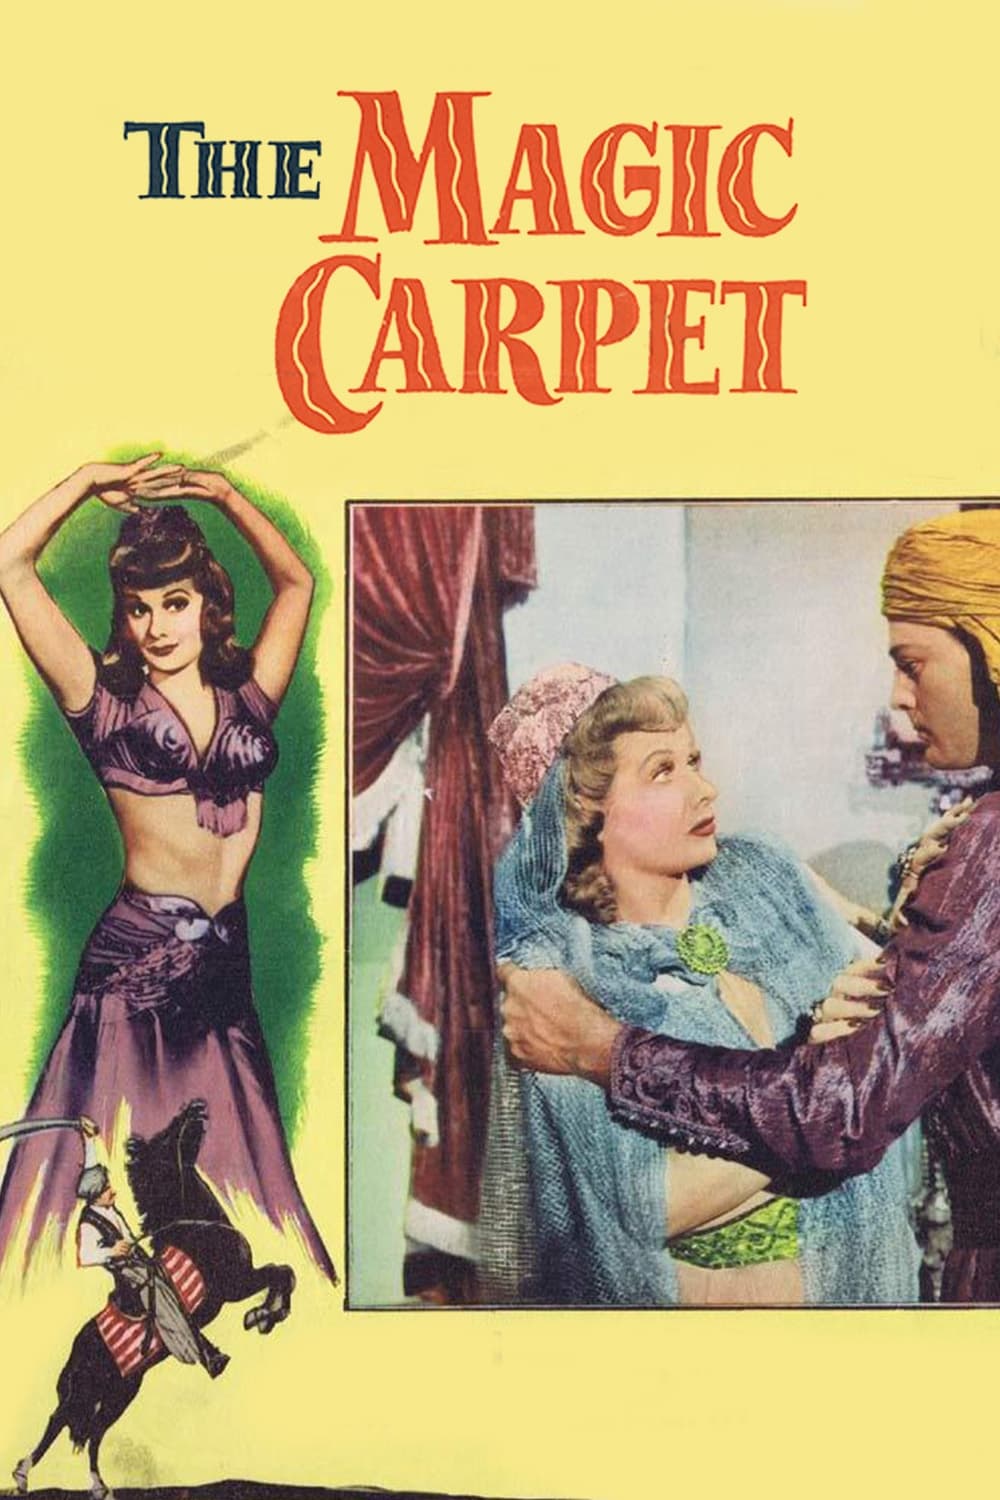 The Magic Carpet (1951)